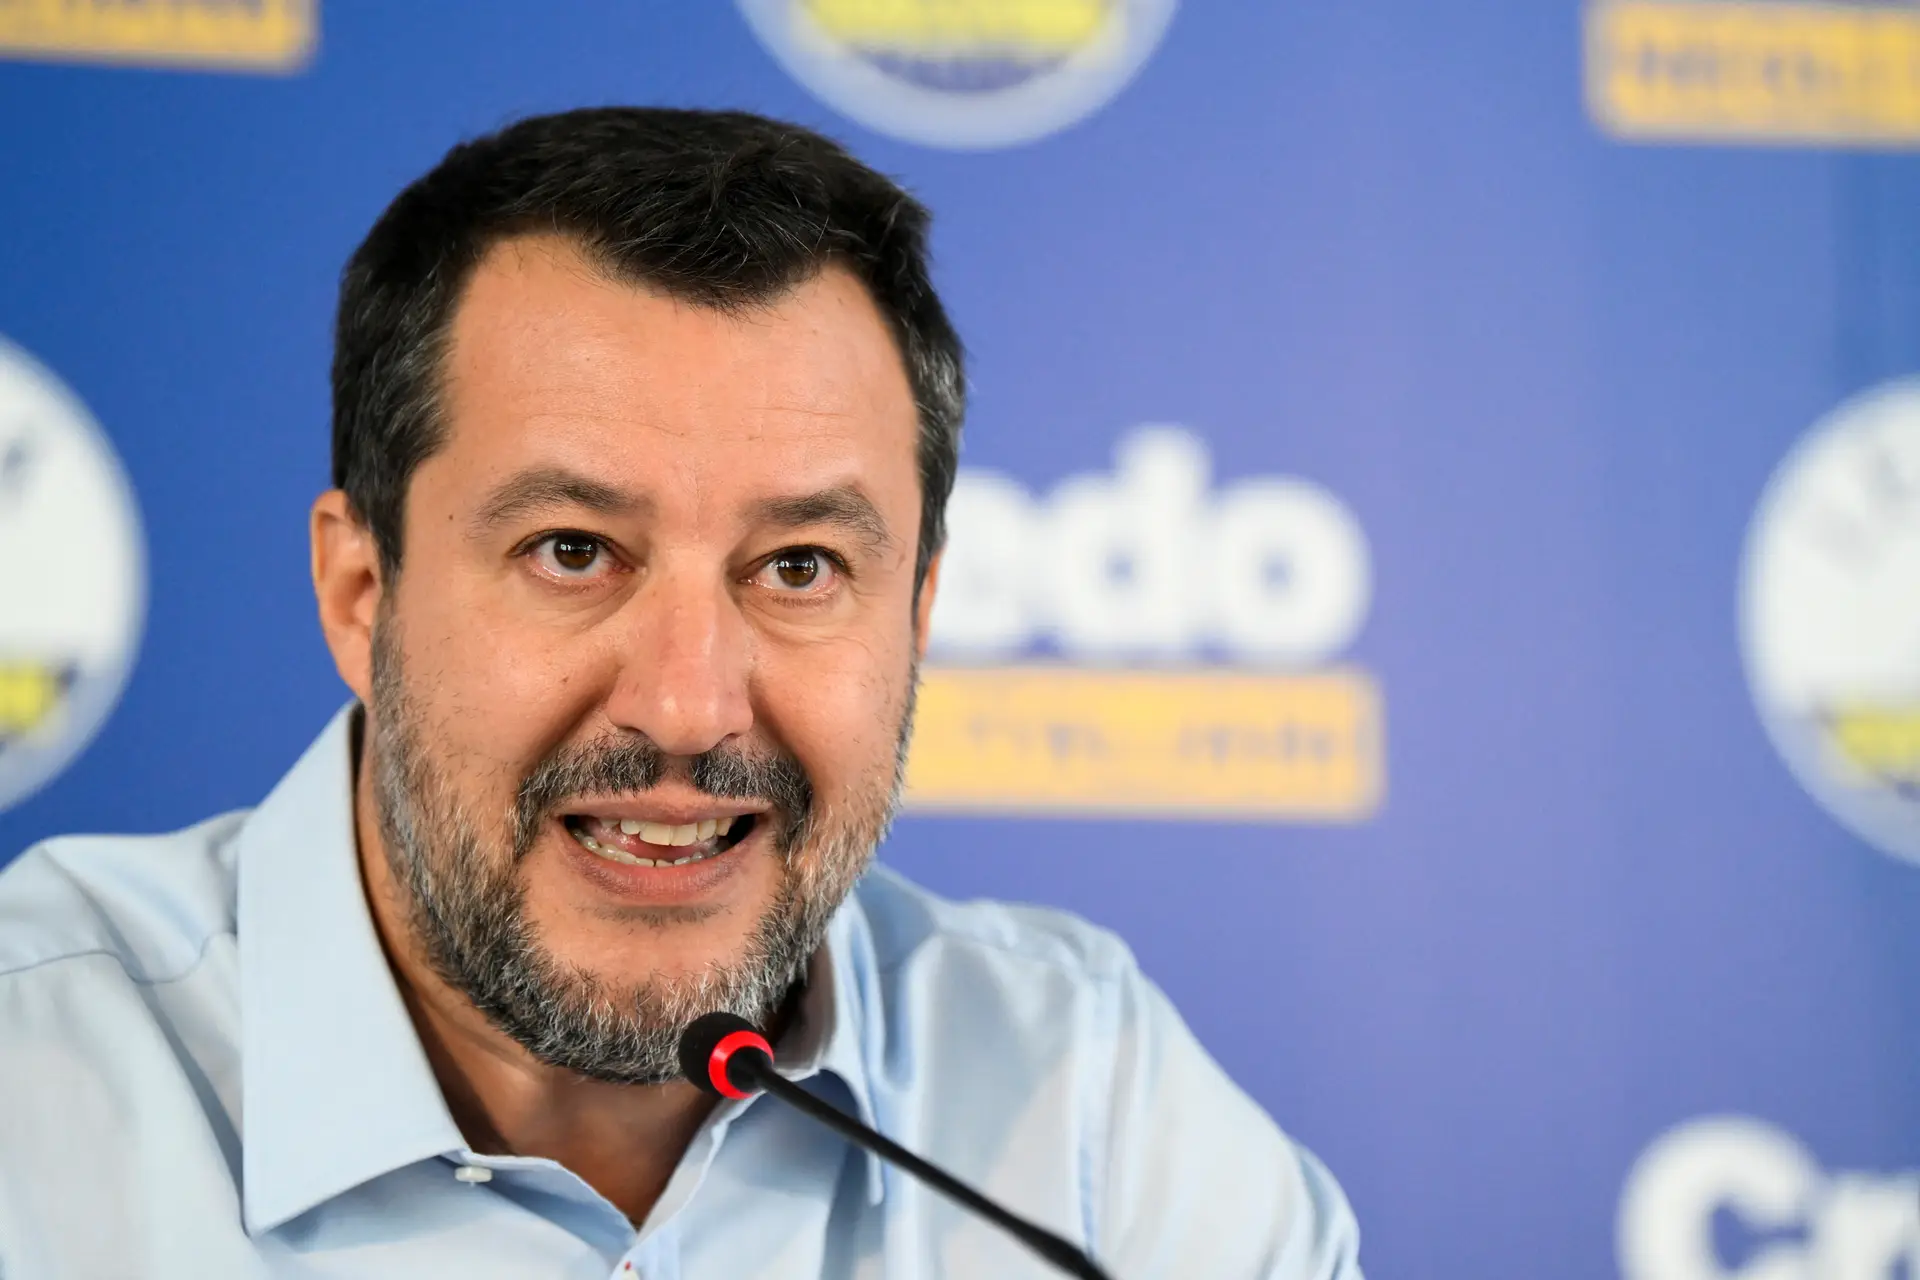 Partido italiano de Salvini escolhe candidato polémico para as eleições europeias